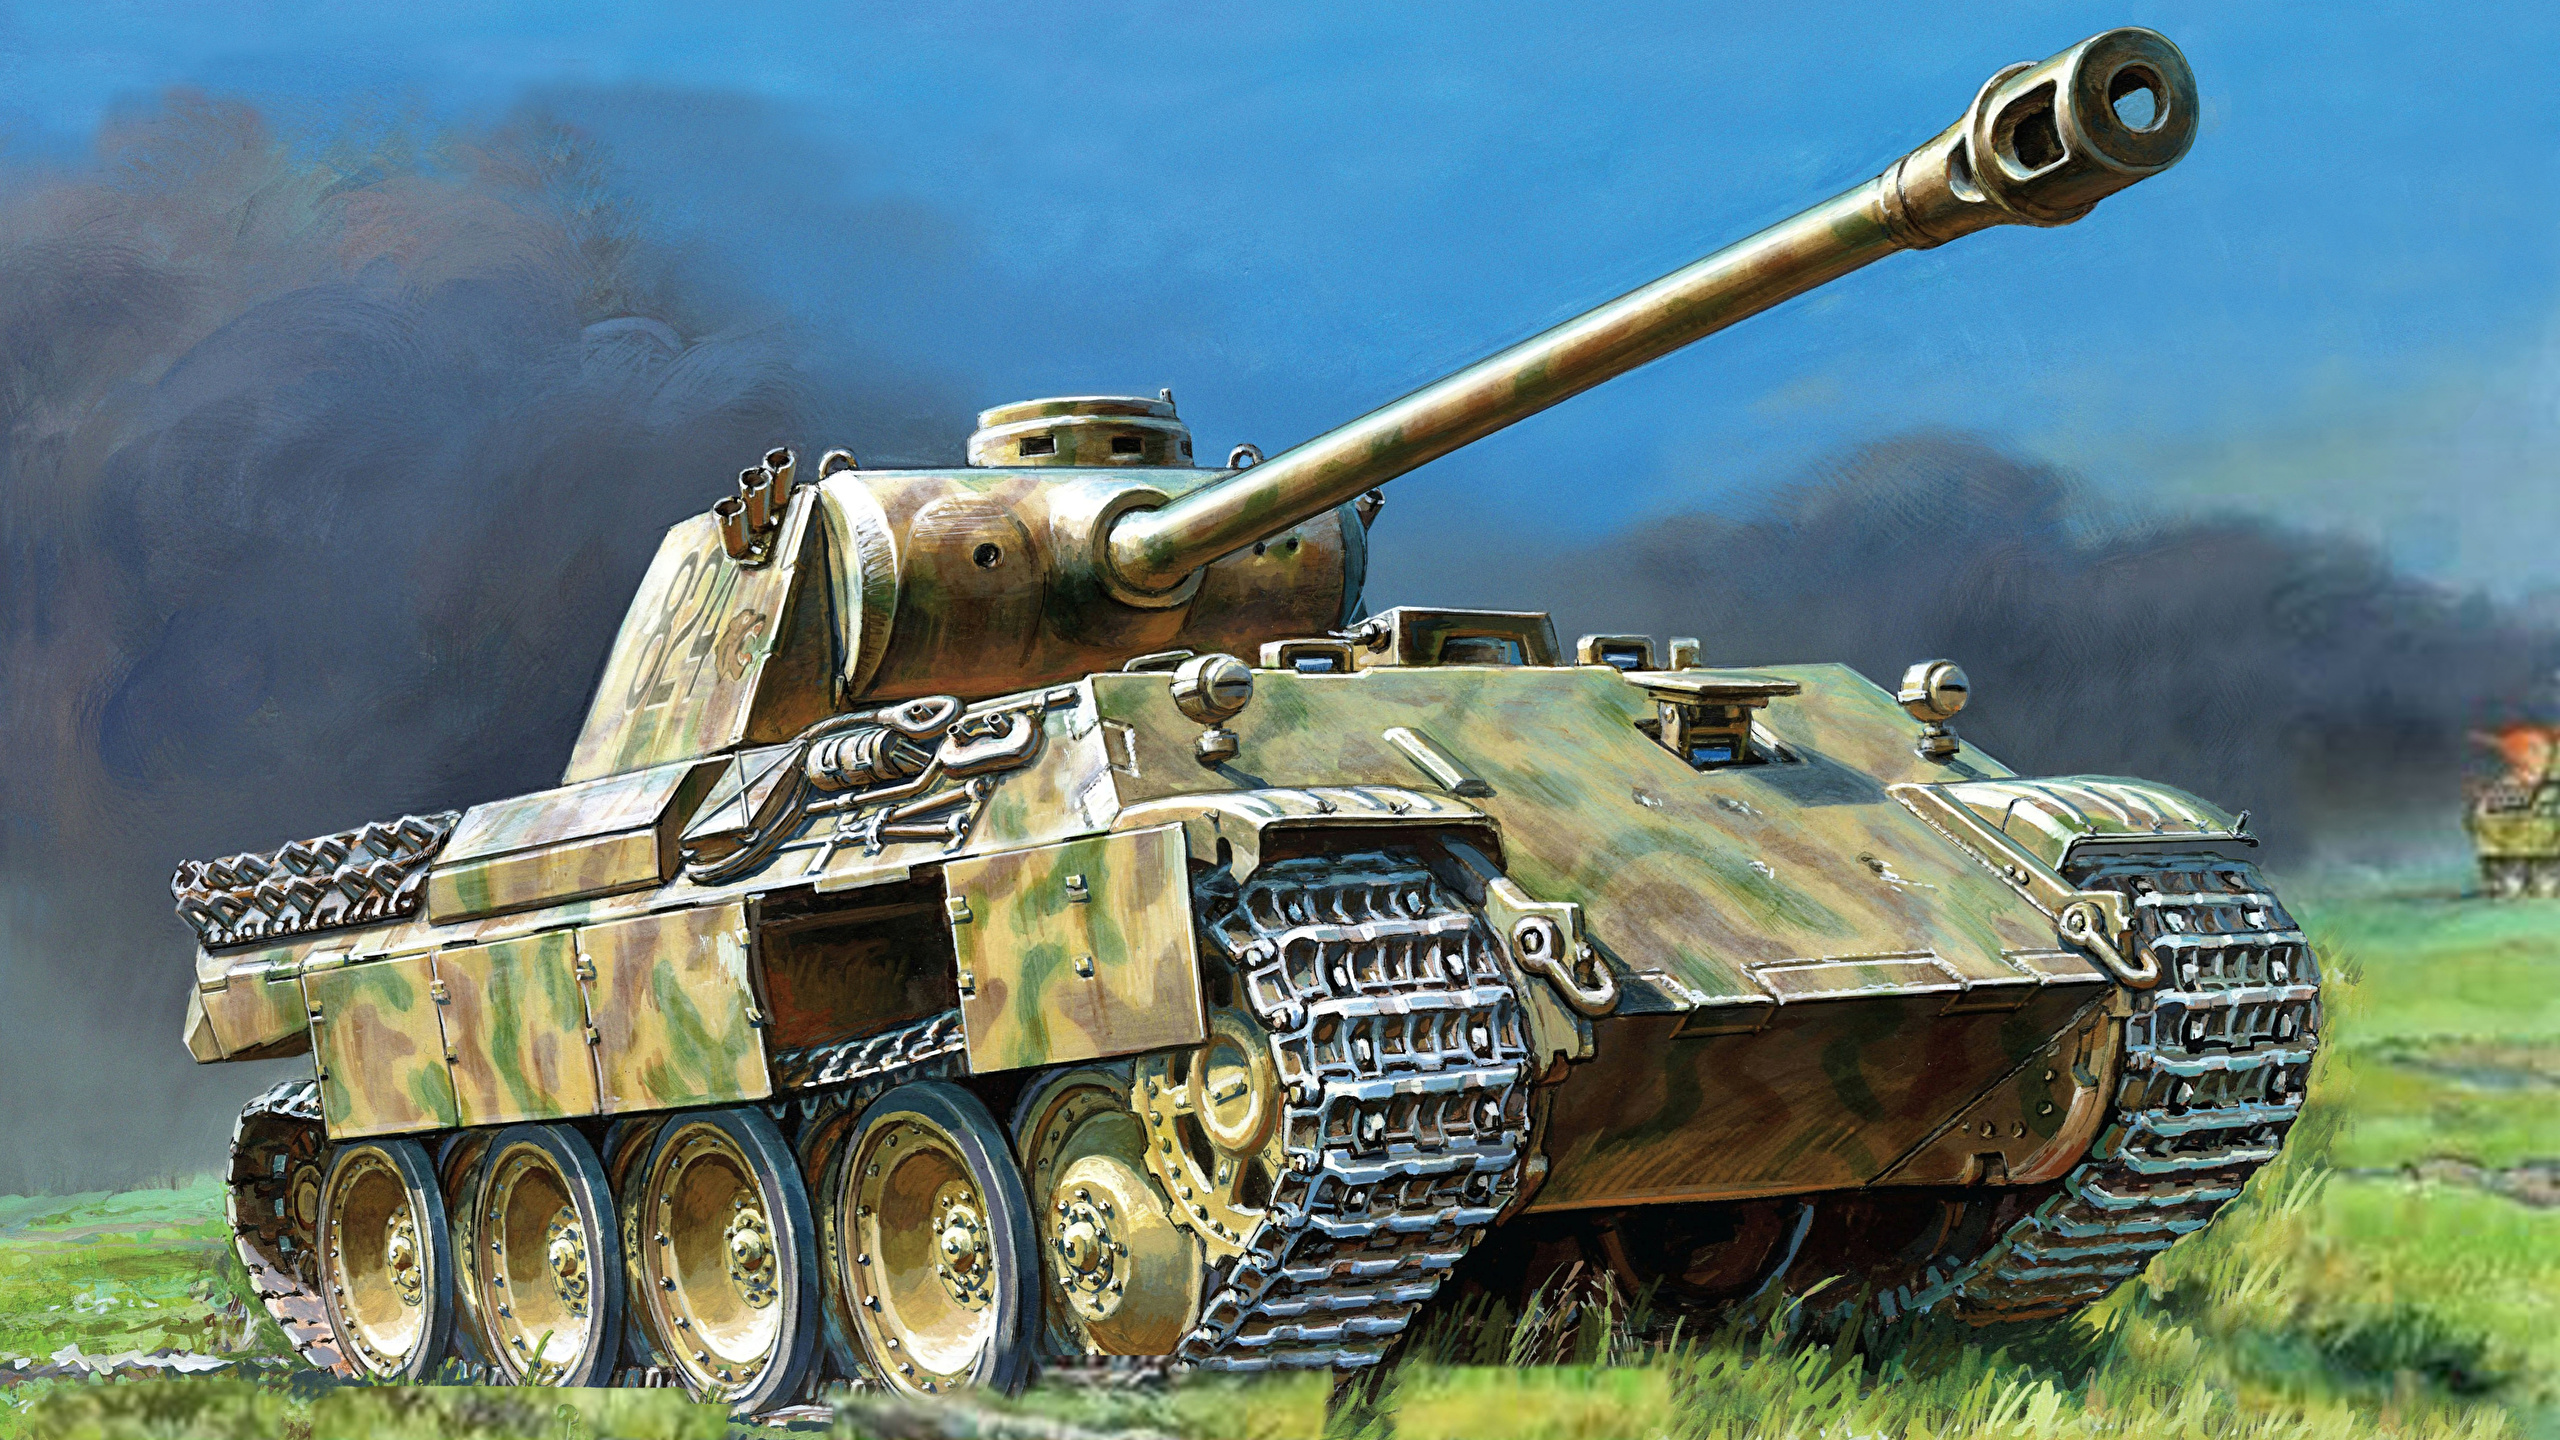 壁紙 2560x1440 戦車 描かれた壁紙 Pz Kpfw V Panther 陸軍 ダウンロード 写真